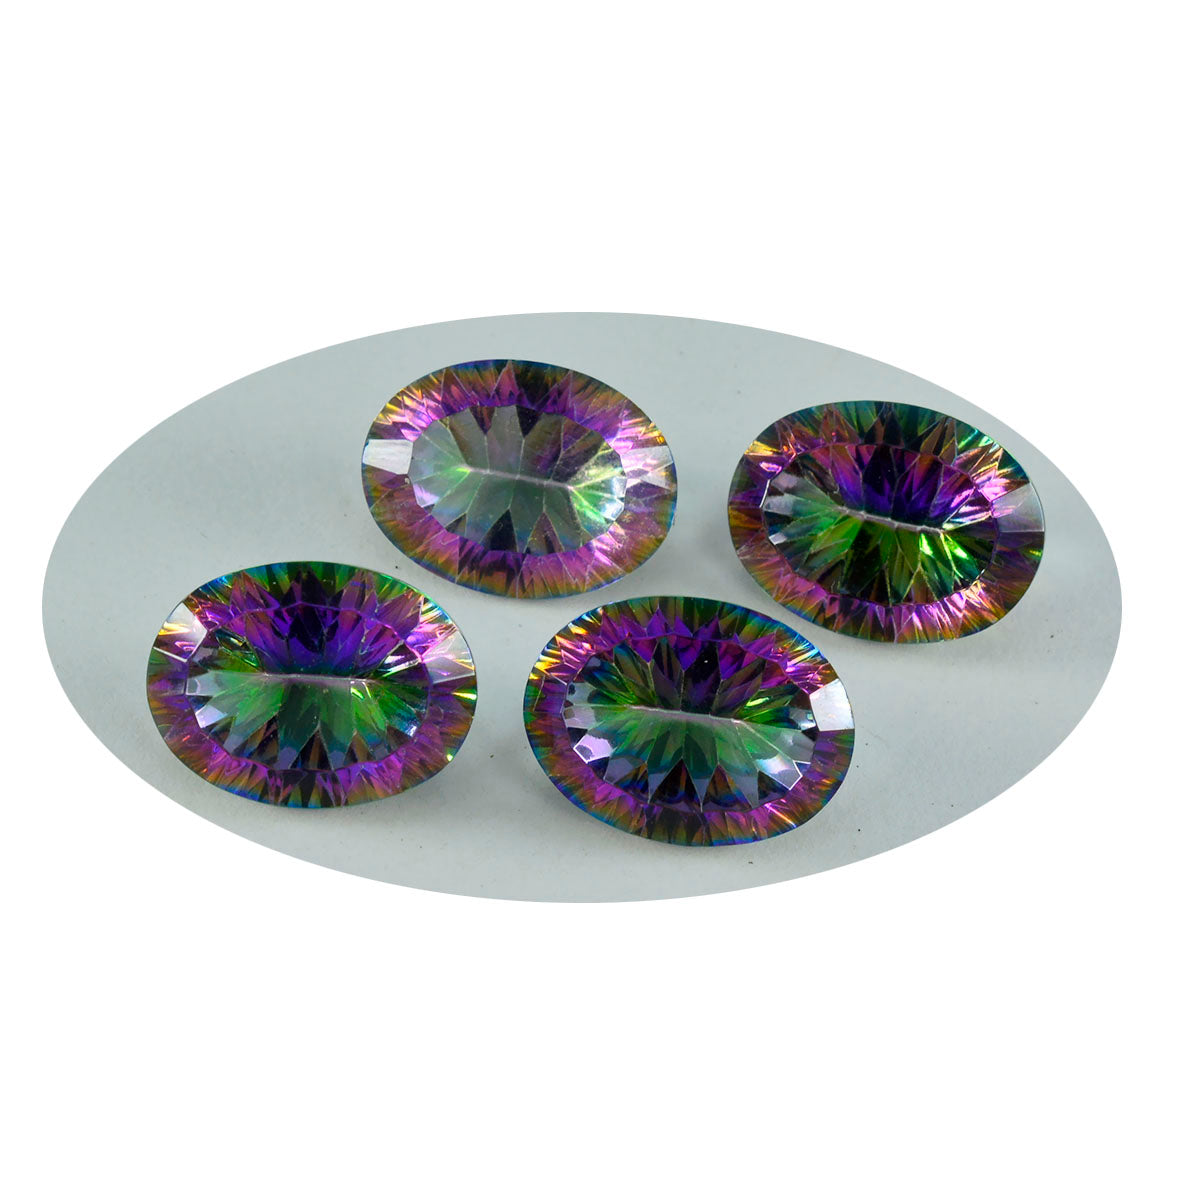 Riyogems 1 pièce de quartz mystique multicolore à facettes 10x12mm forme ovale belle pierre précieuse de qualité